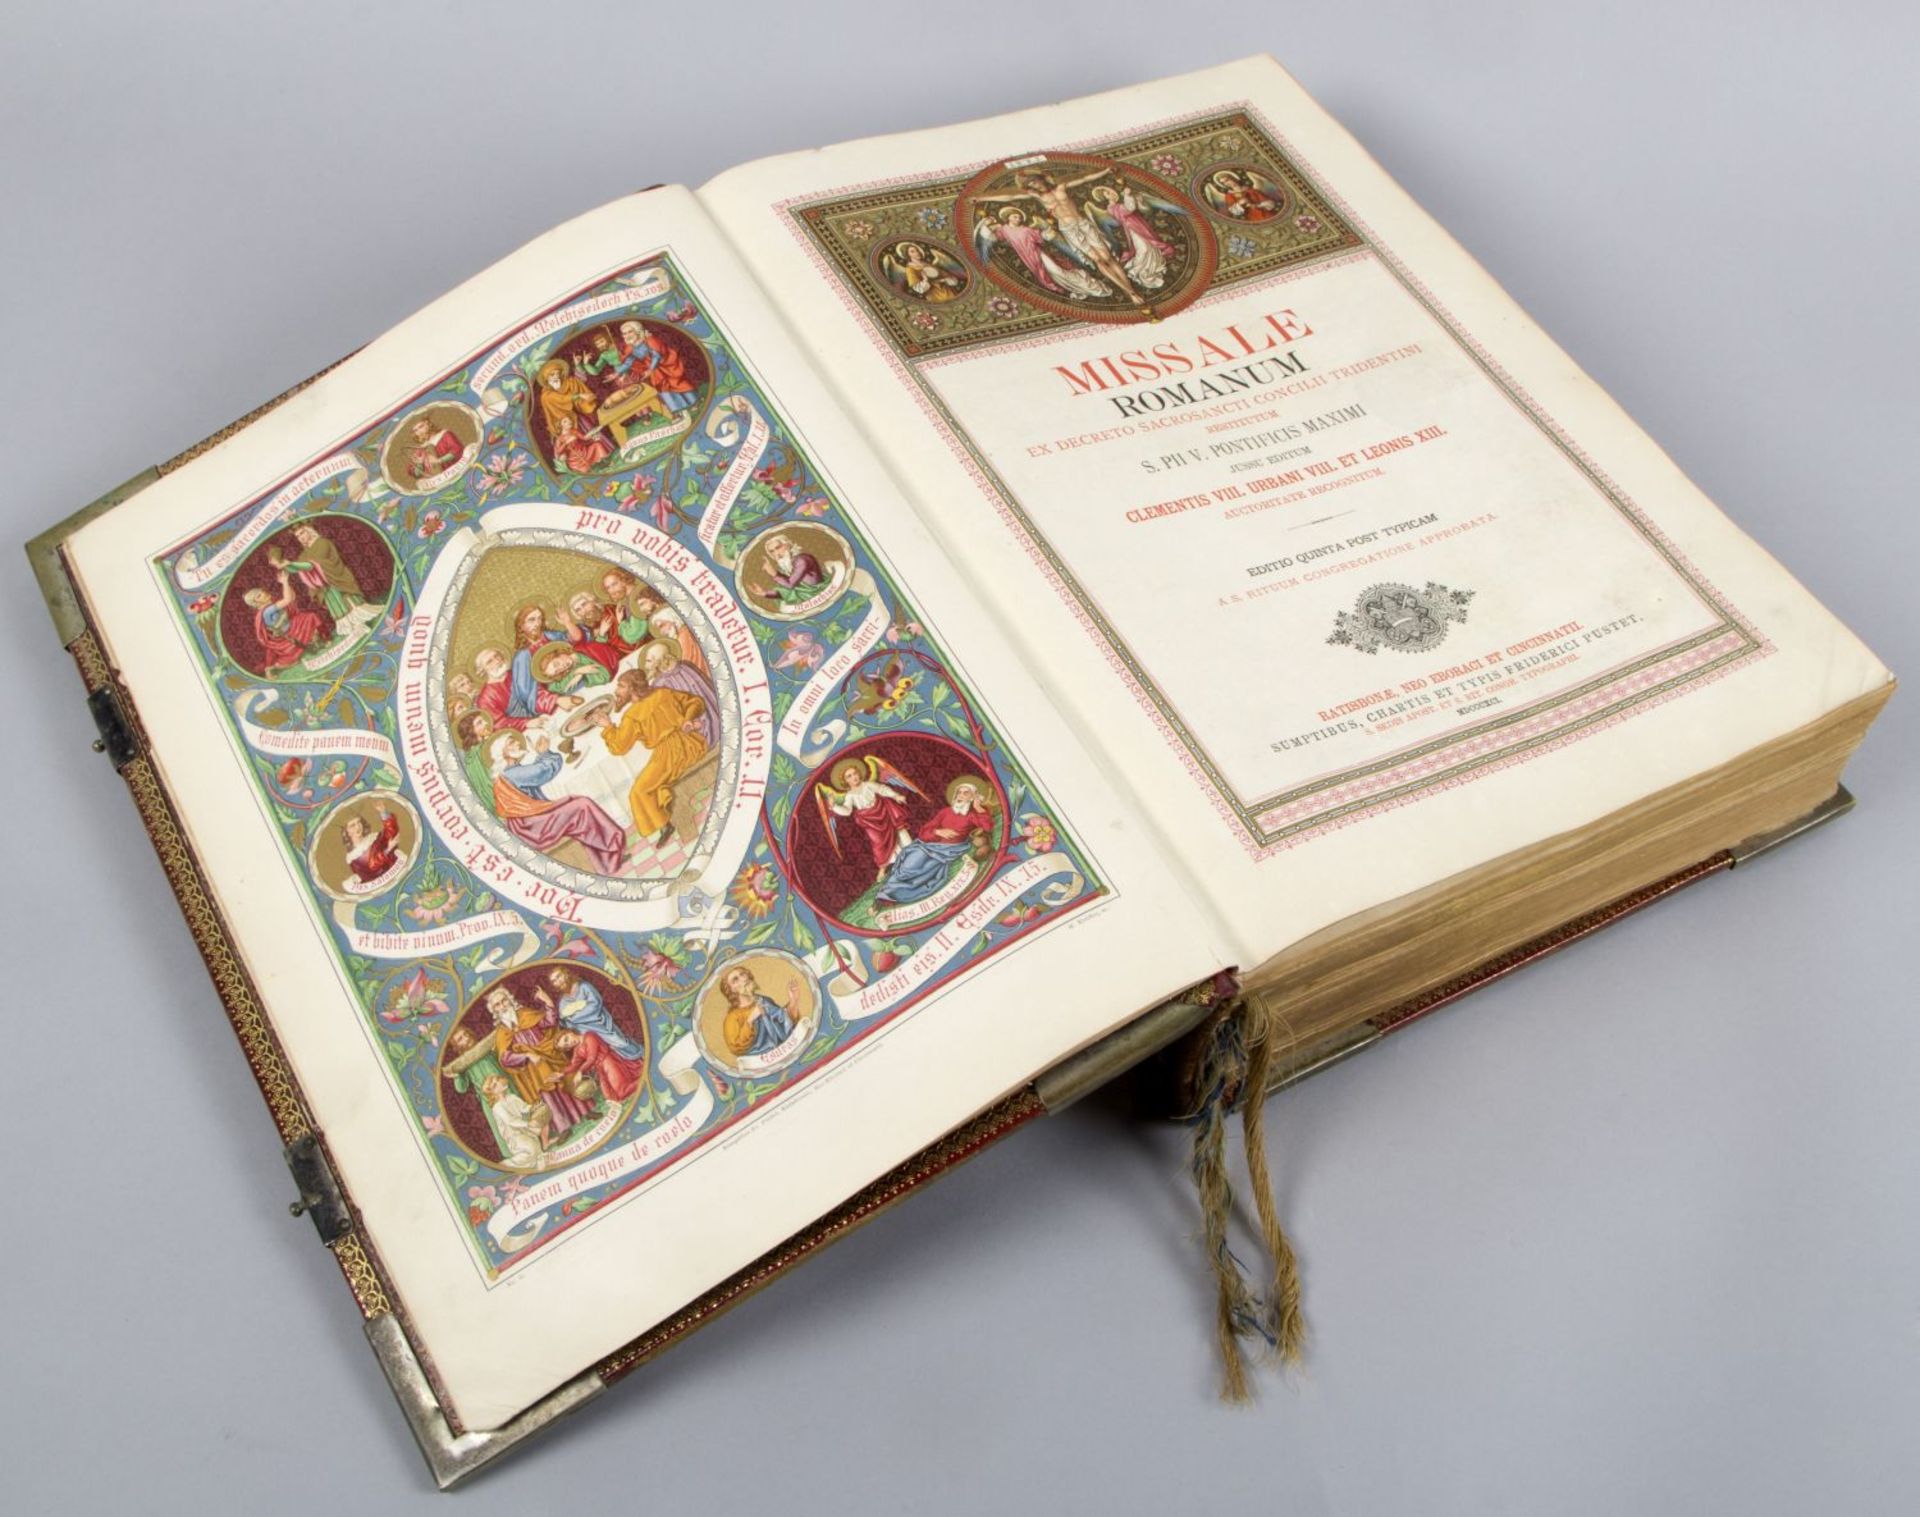 Missale Romanum Ex decreto sacrosancti concilii tridentini. Rgbg., N.Y., Cincinnati, 1891. - Bild 3 aus 3